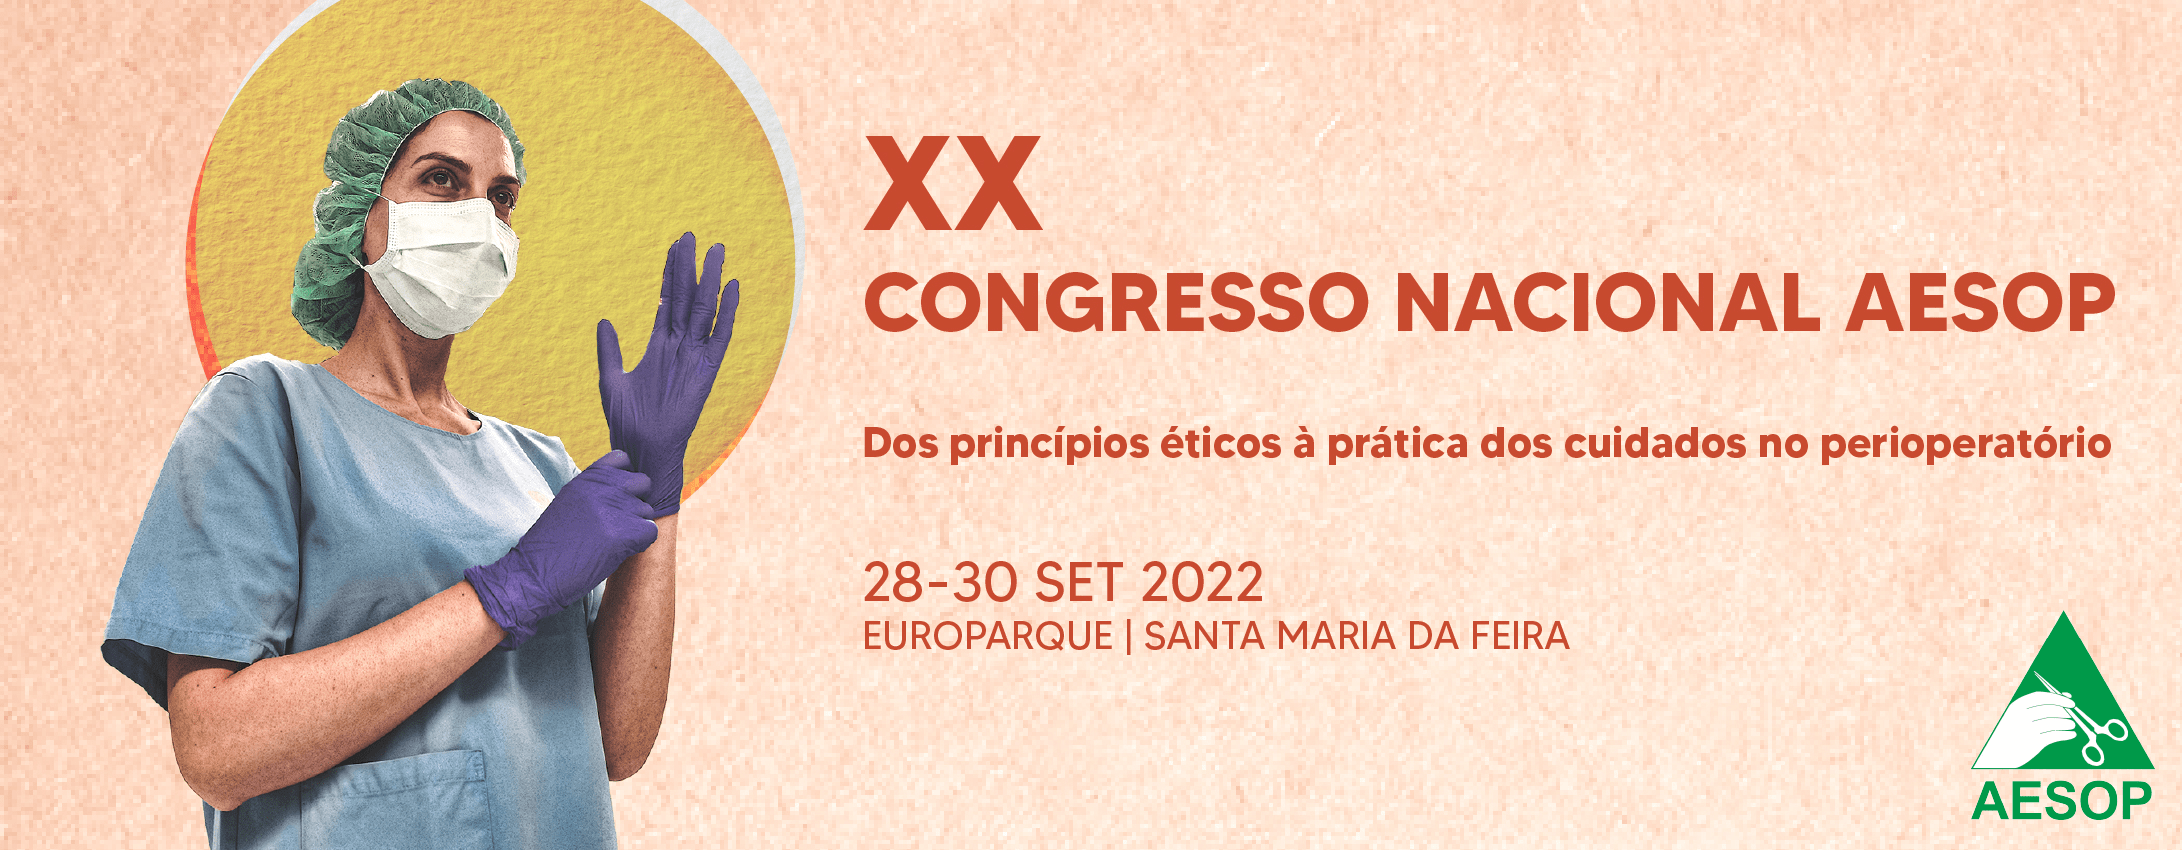 XX CONGRESSO NACIONAL DA AESOP 